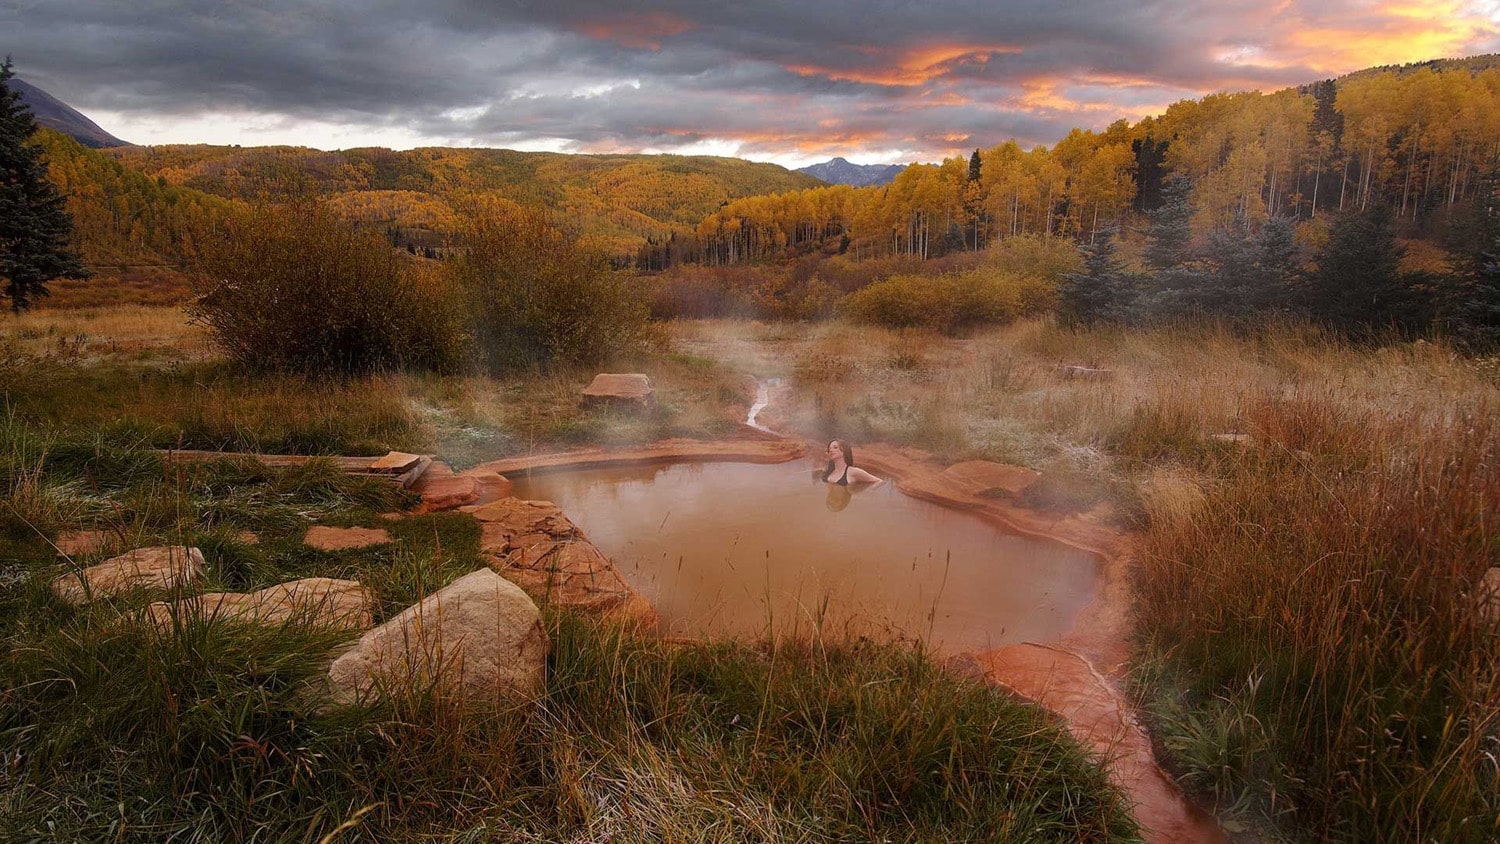 dunton hot springs resort in colorado